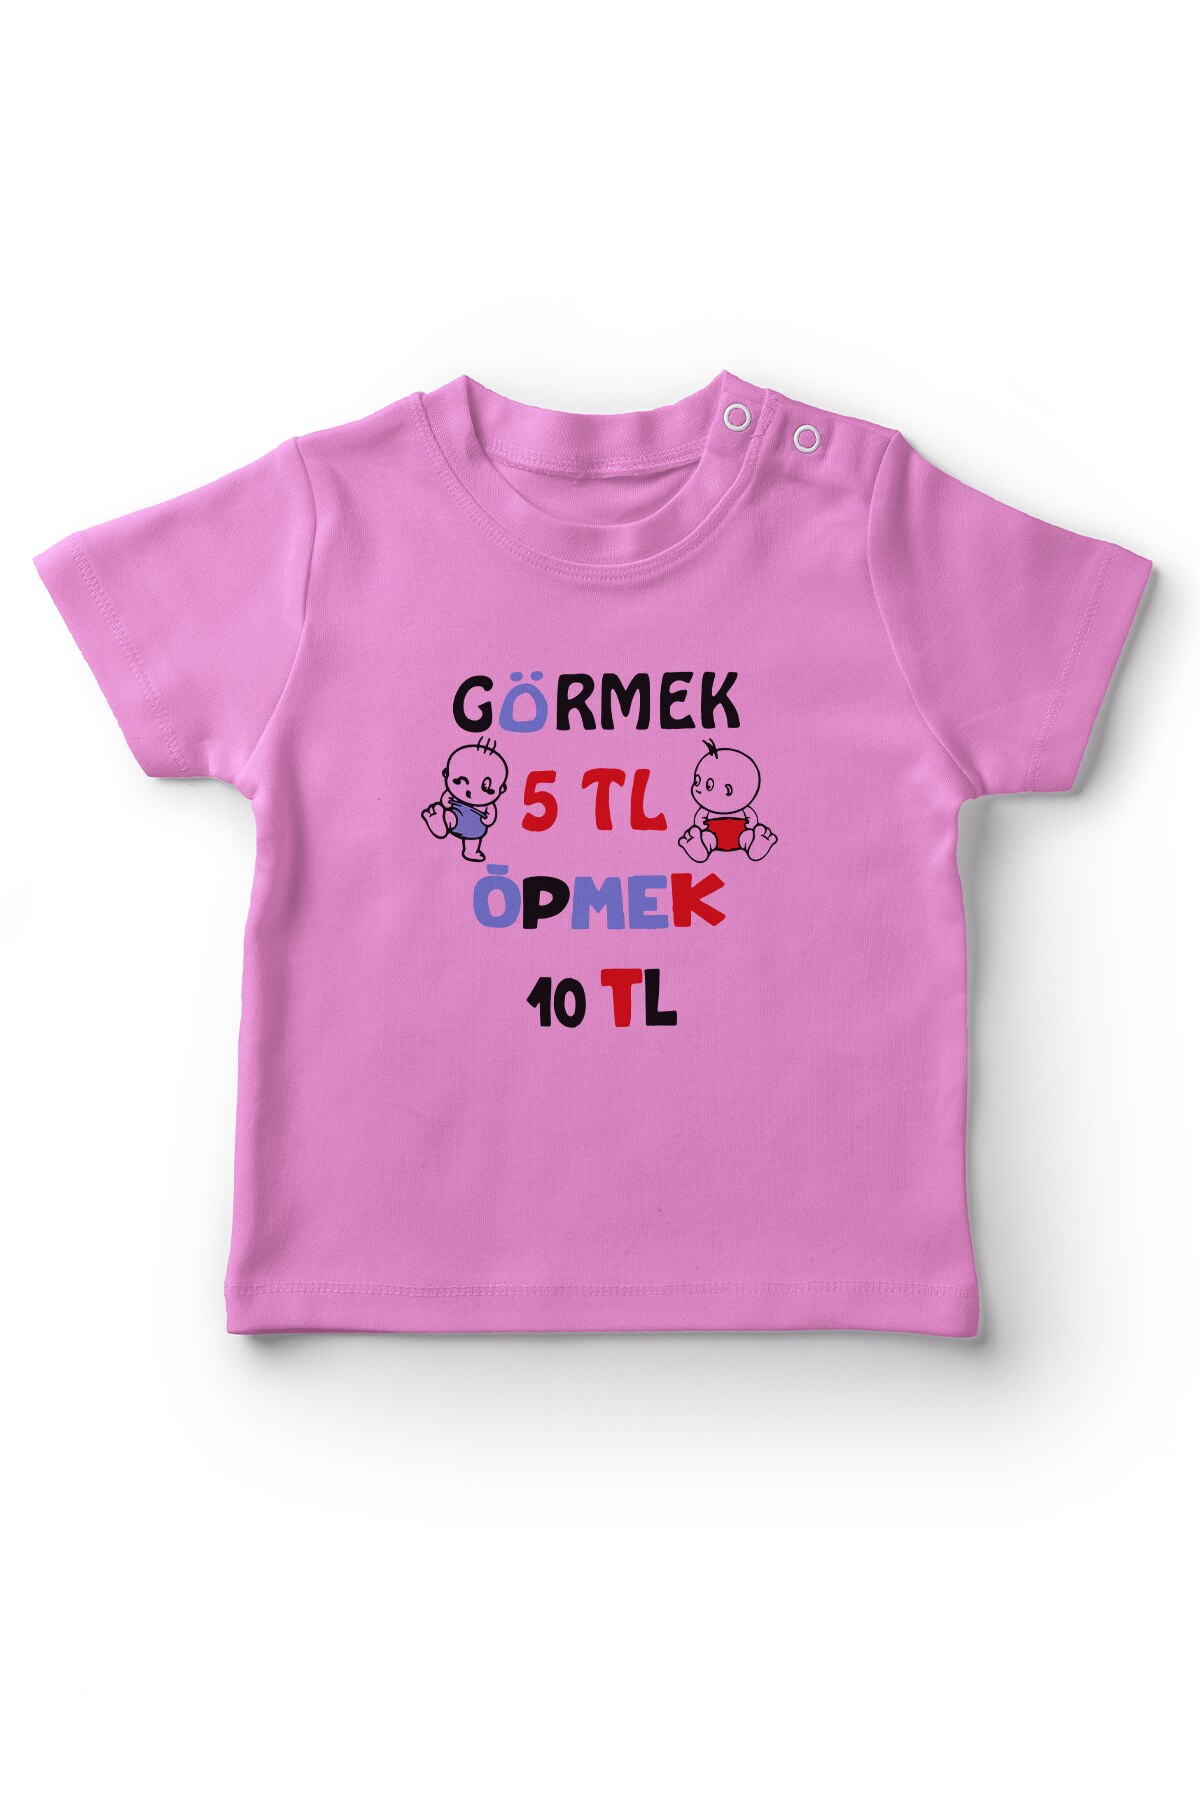 Angemiel Baby Zien 5 Tl Kus 10 Tl Meisje Baby T-shirt Roze